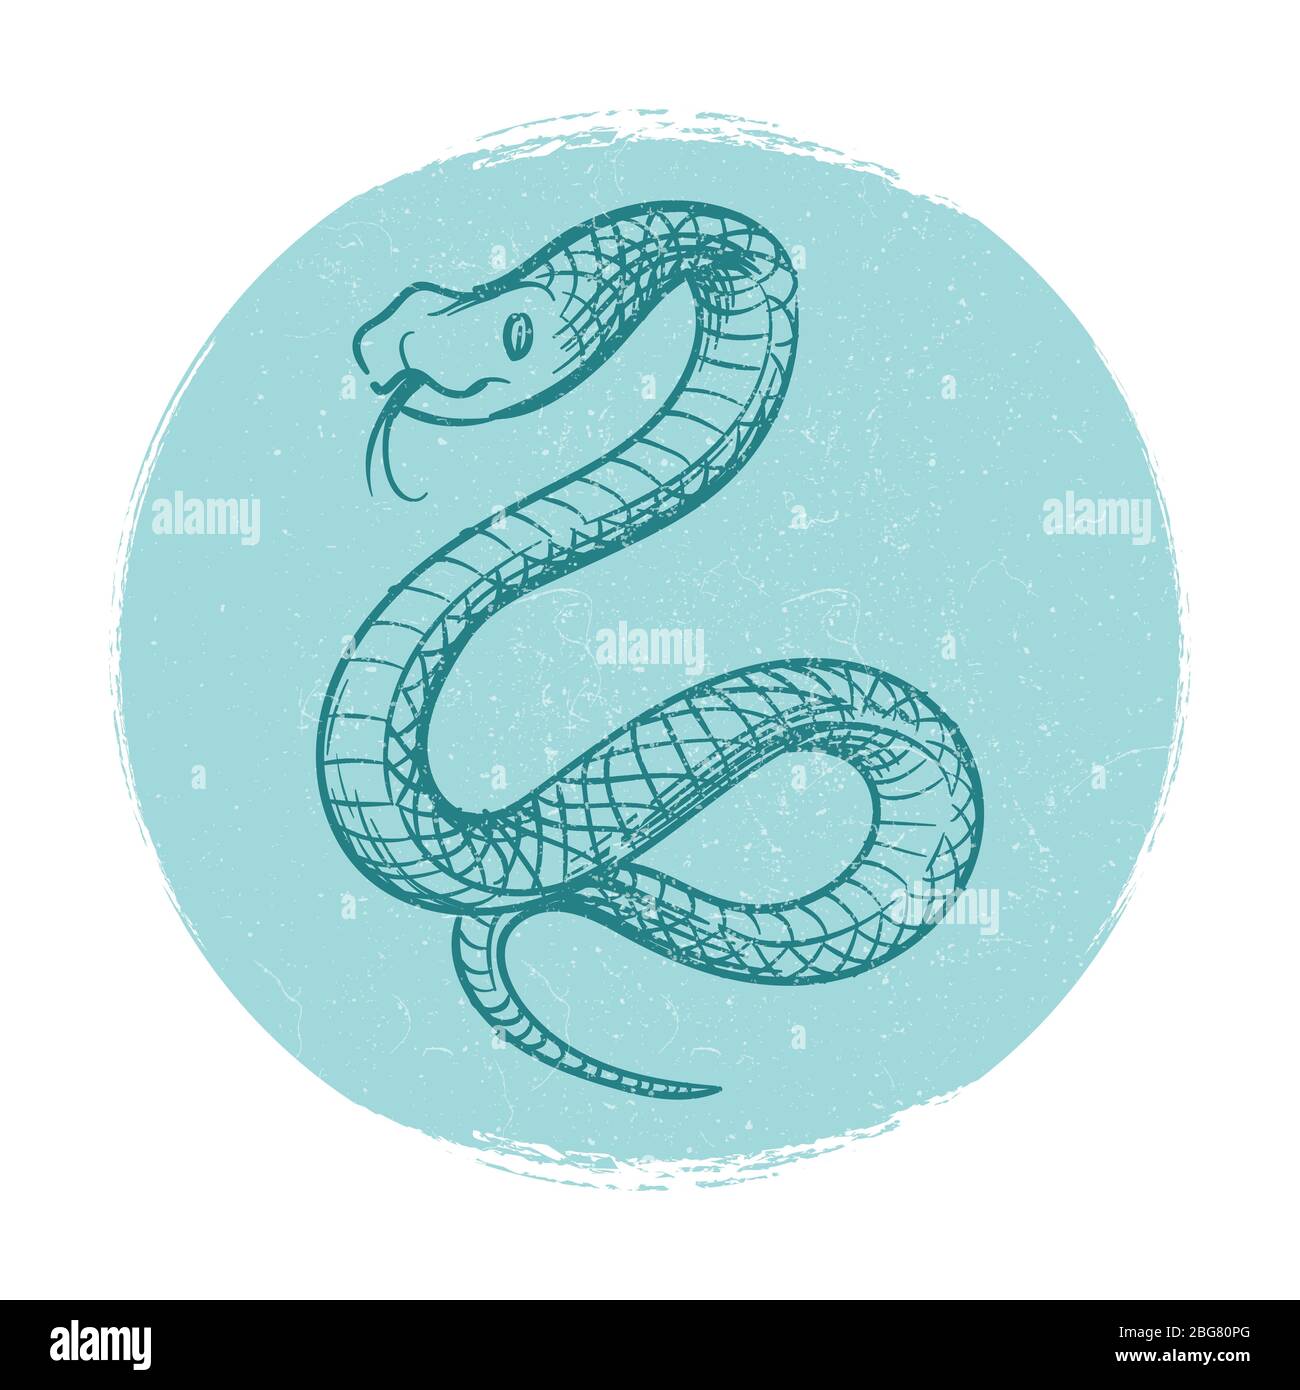 Emblème de la conception vectorielle Grunge avec serpent tiré à la main isolé sur l'illustration blanche Illustration de Vecteur